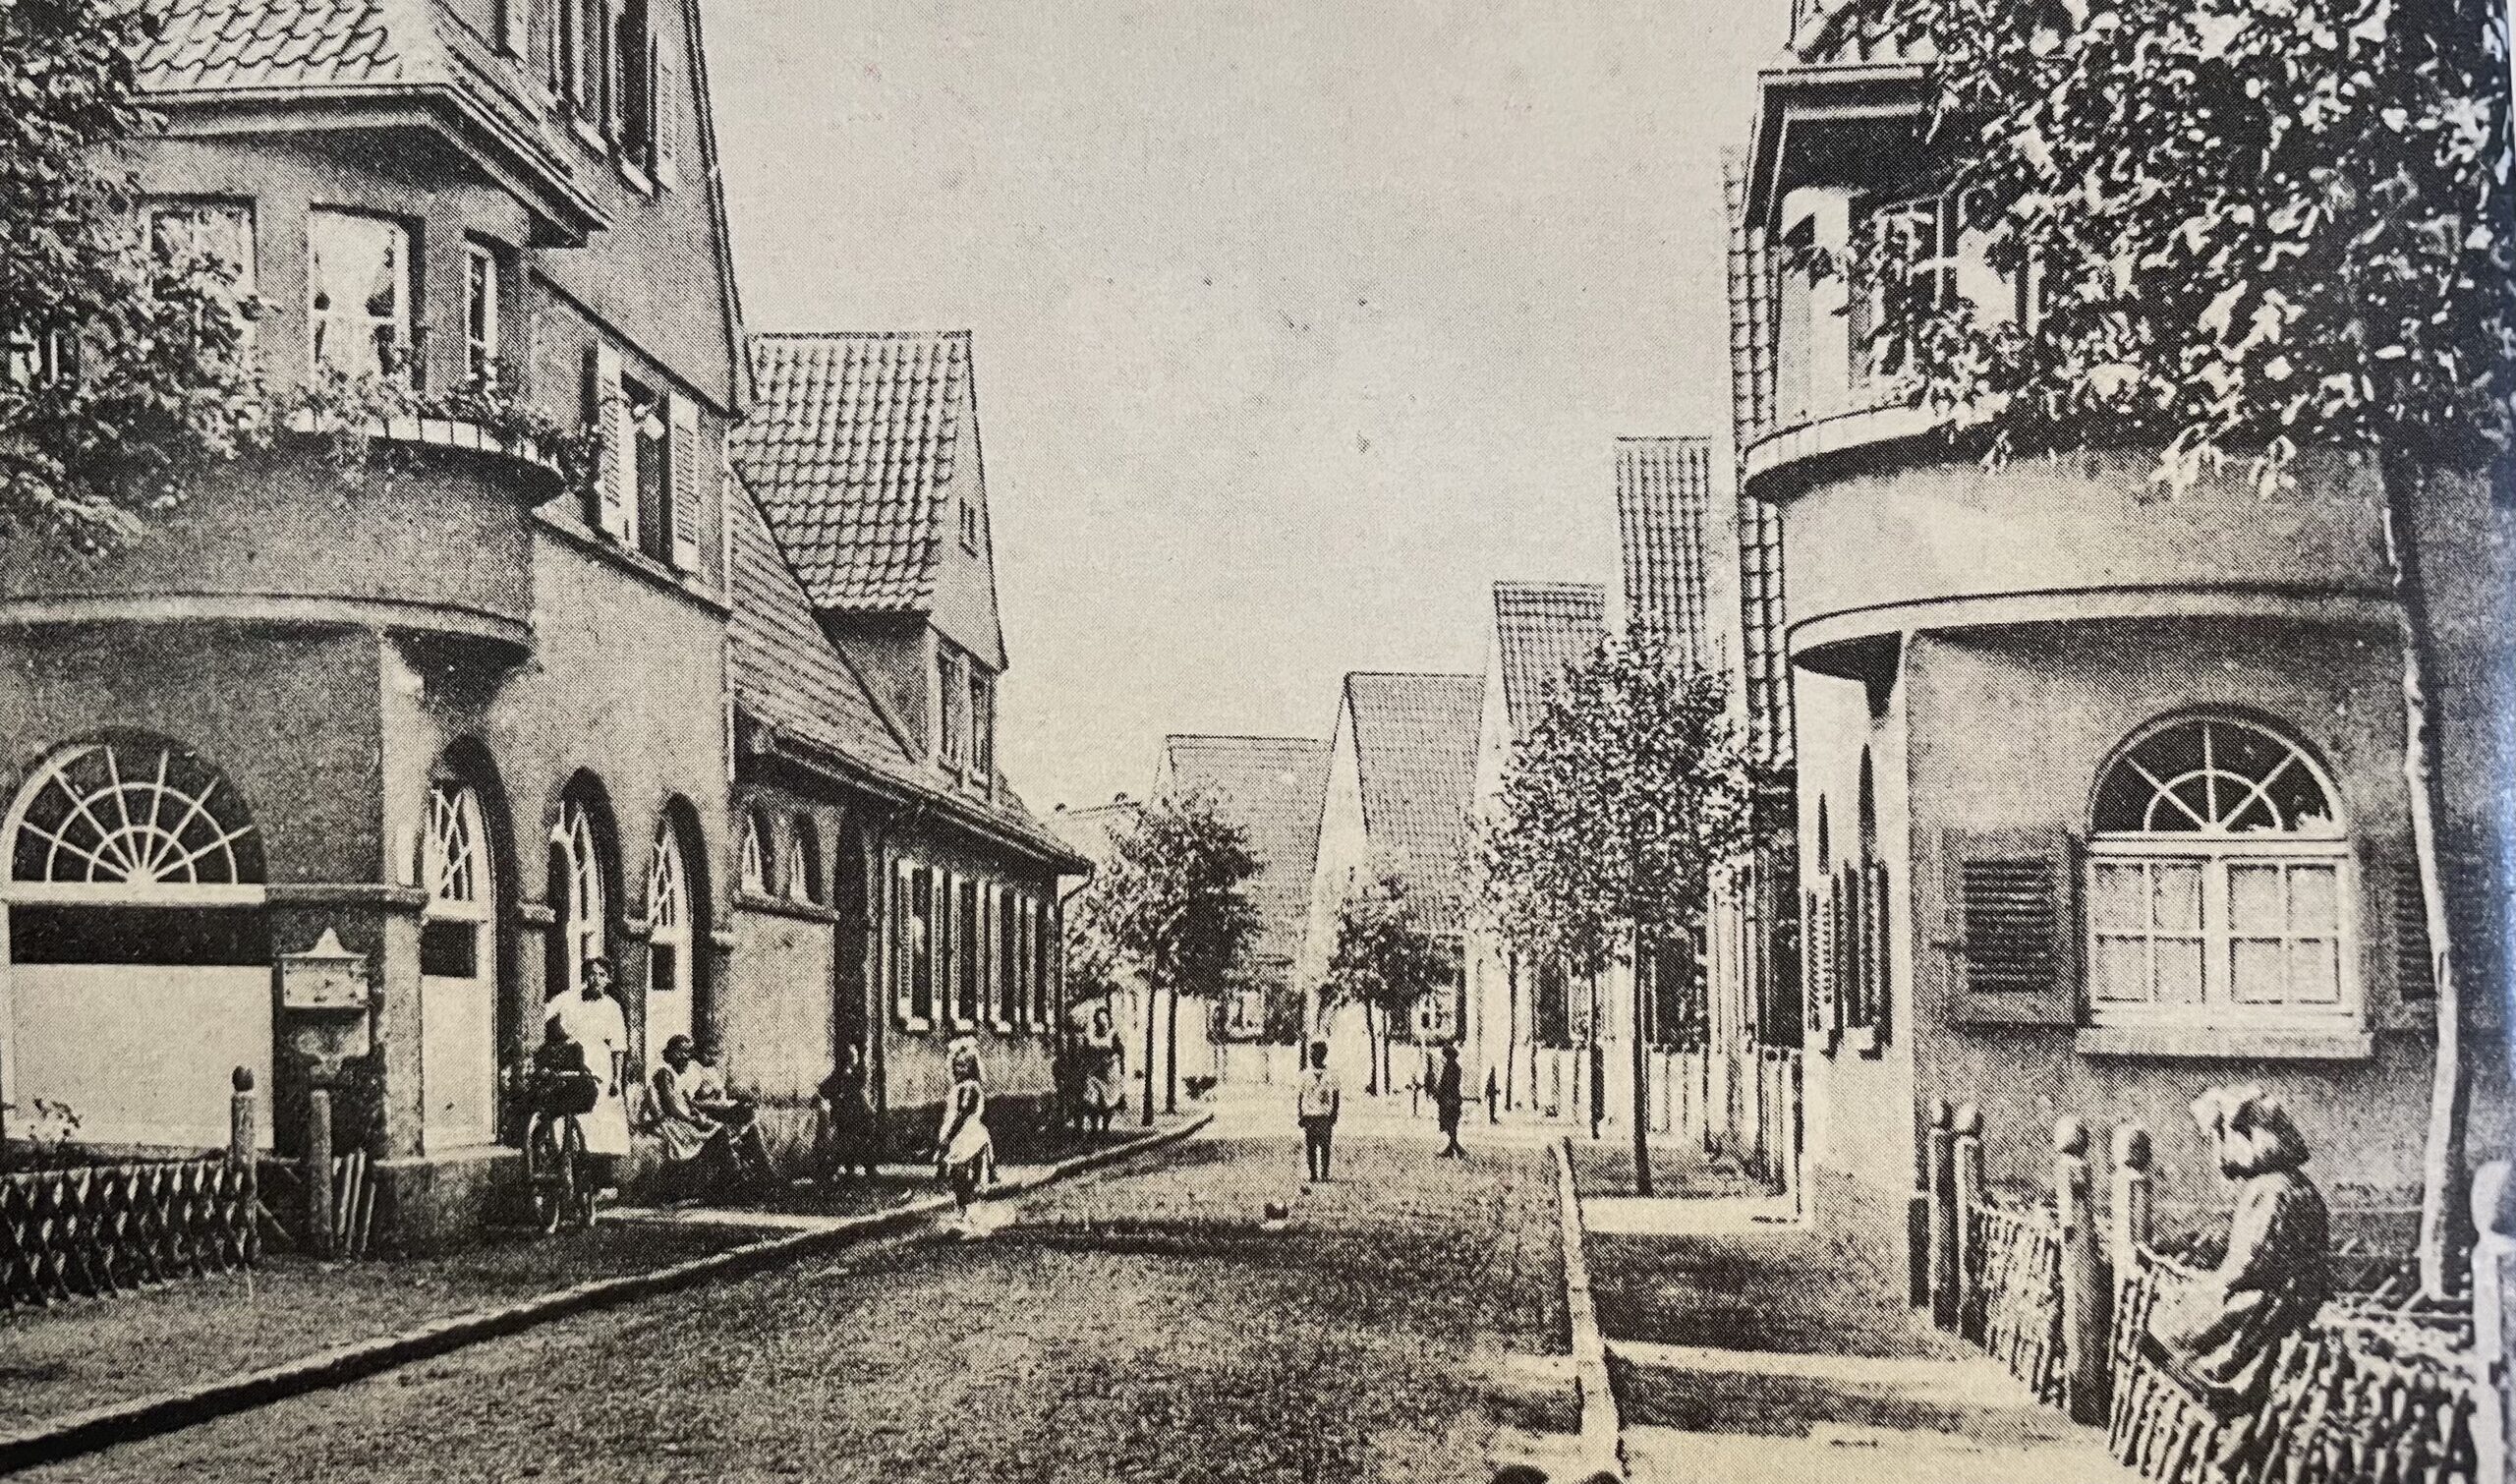 Postkarte der Roonstraße mit dem Konsum-Geschäft links um 1915, Fotograf unbekannt, veröffentlicht u.a. bei Rolf Hönscheid: Rote Kolonie, Troisdorfer Jahresheften, 1979